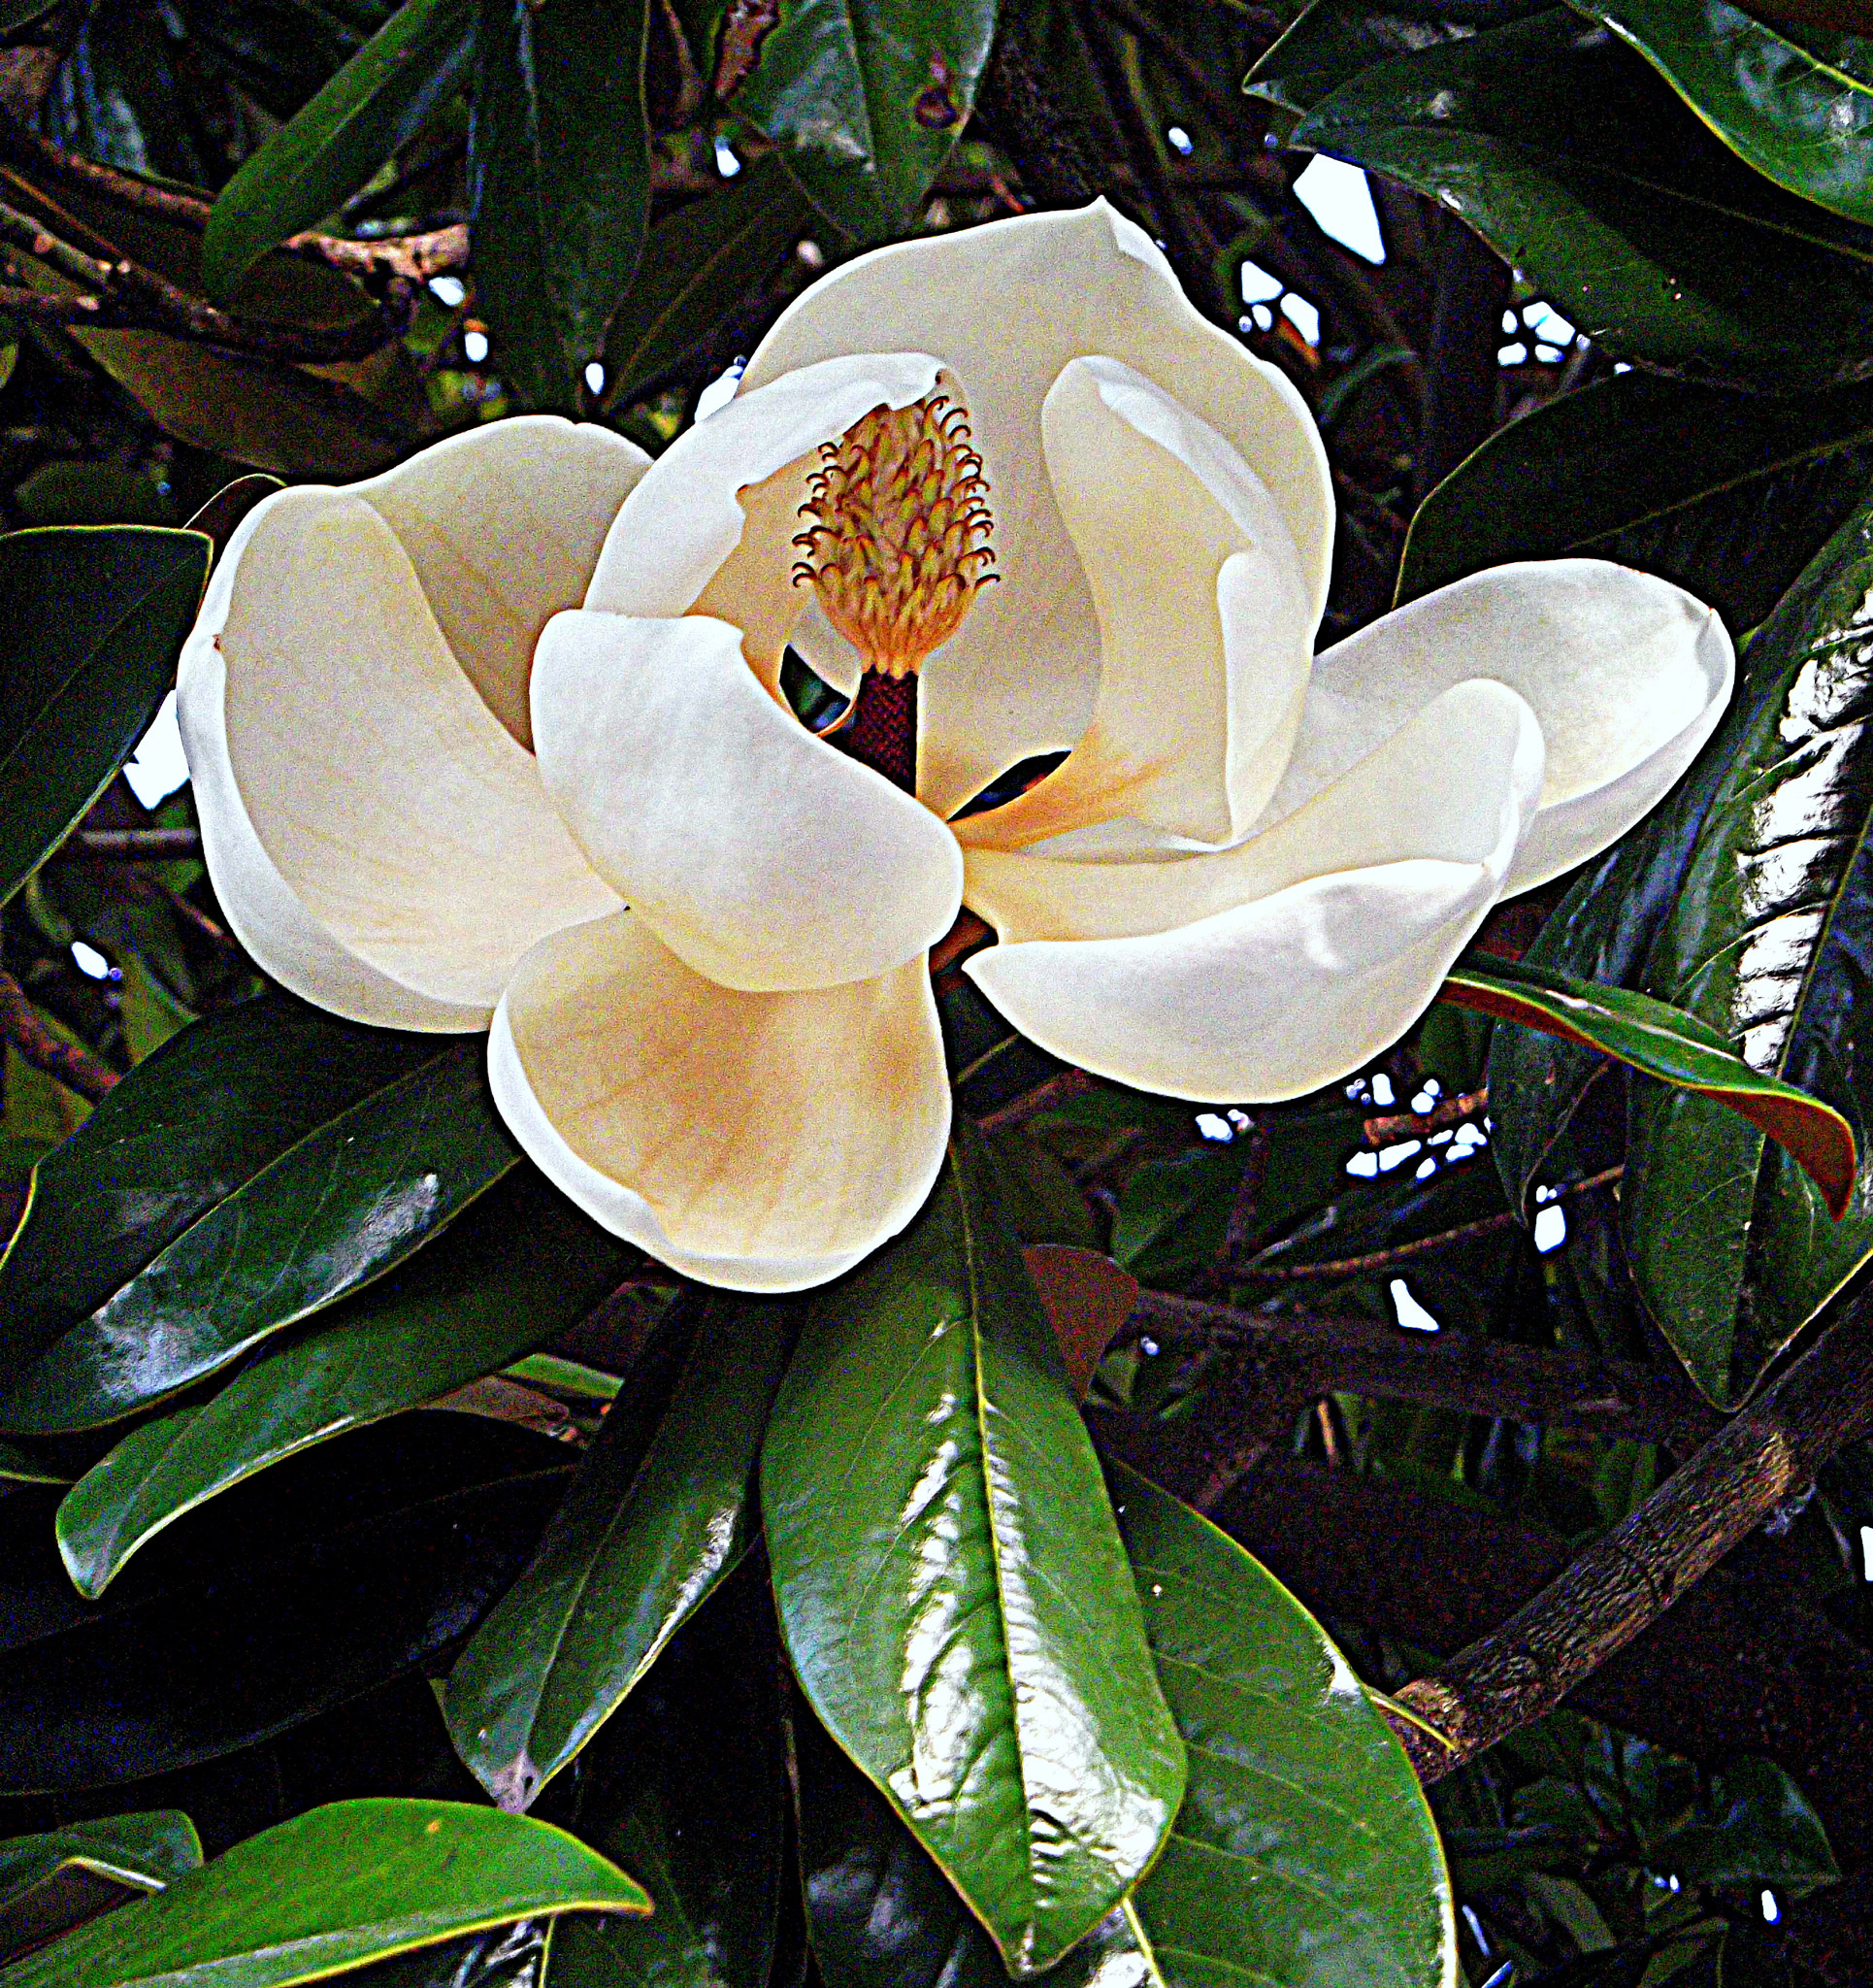 Fujifilm FinePix JX250 sample photo. Fiore di magnolia. photography